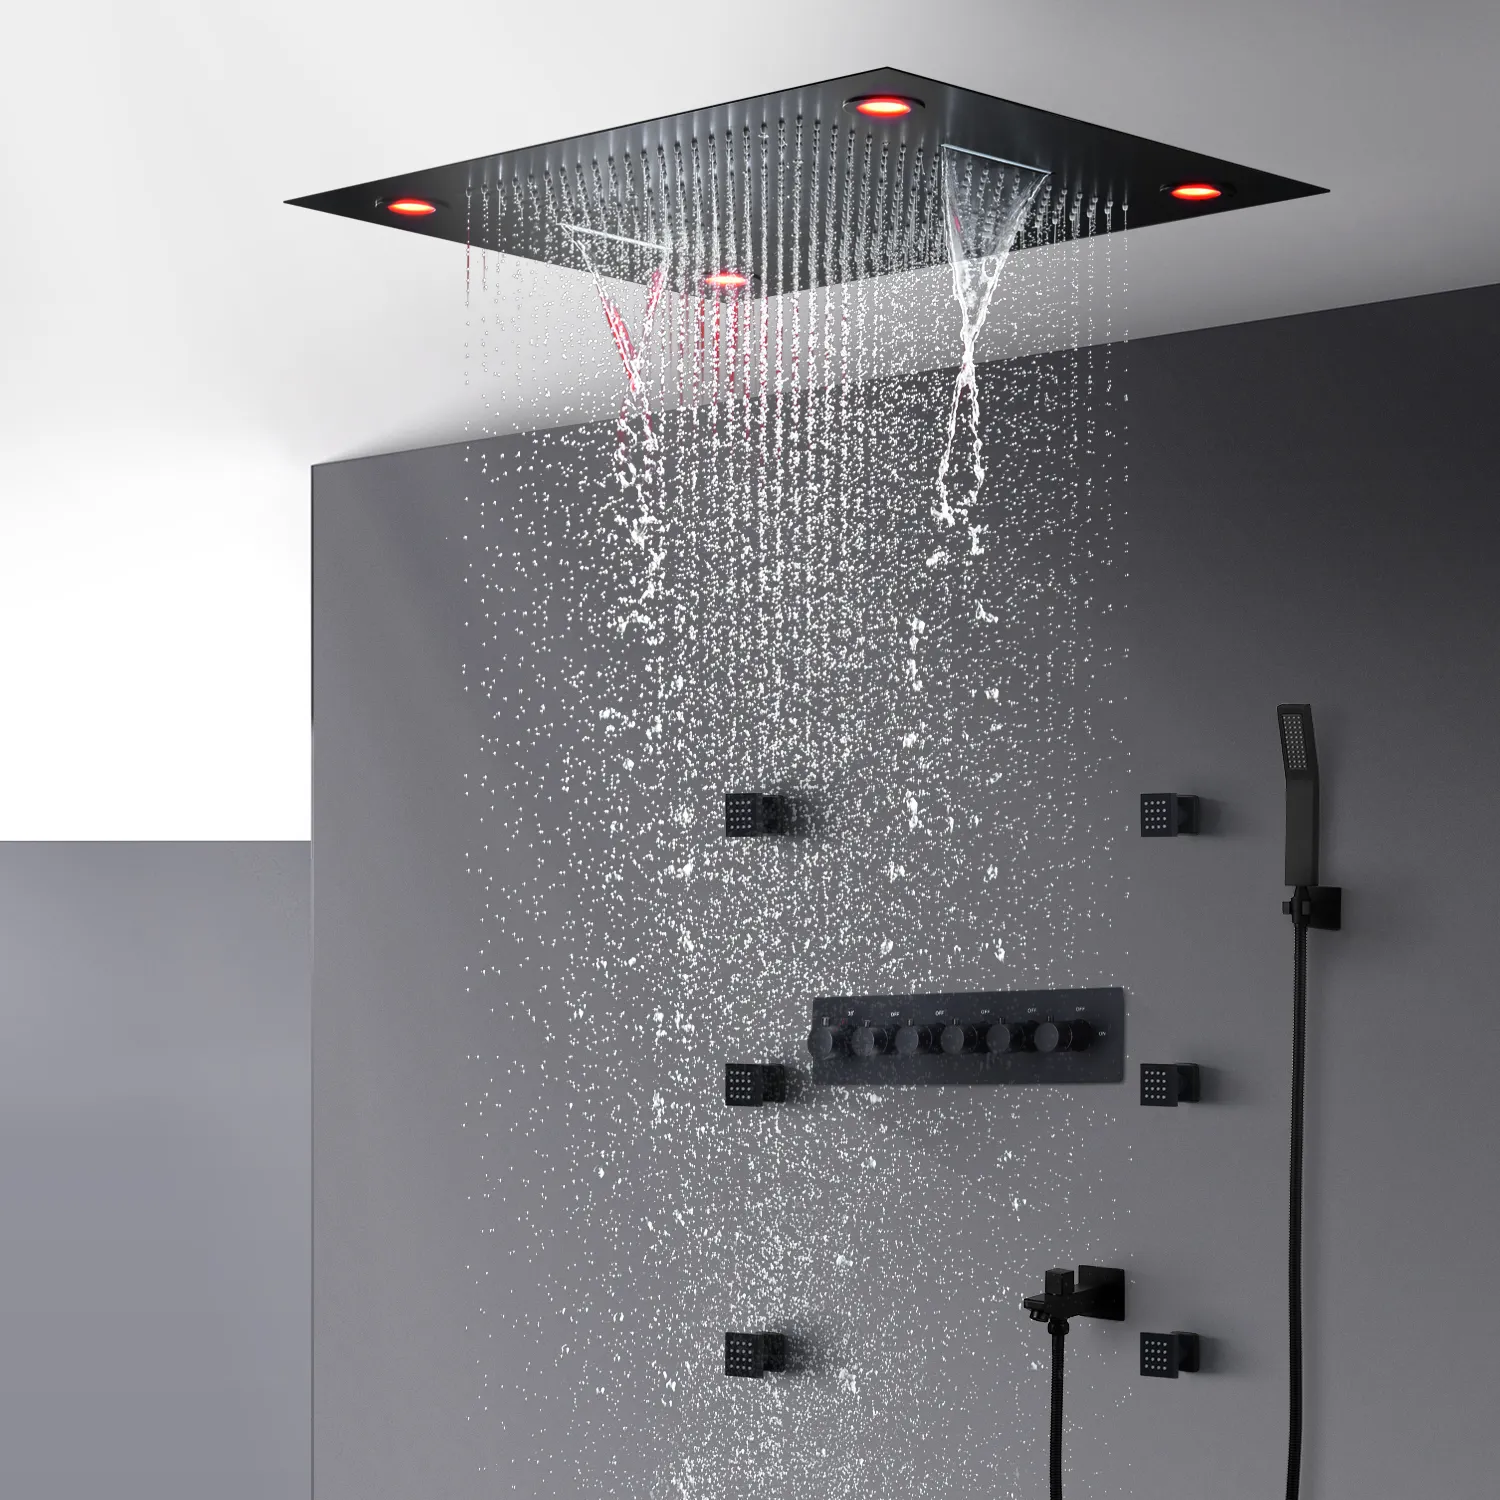 Banyo Siyah Duş Bataryası Seti Termostatik Duş Banyo Mikser Vana Lüks Tavan LED Büyük Yağmur Şelale Duş Başlığı Sistemi 600 * 800mm